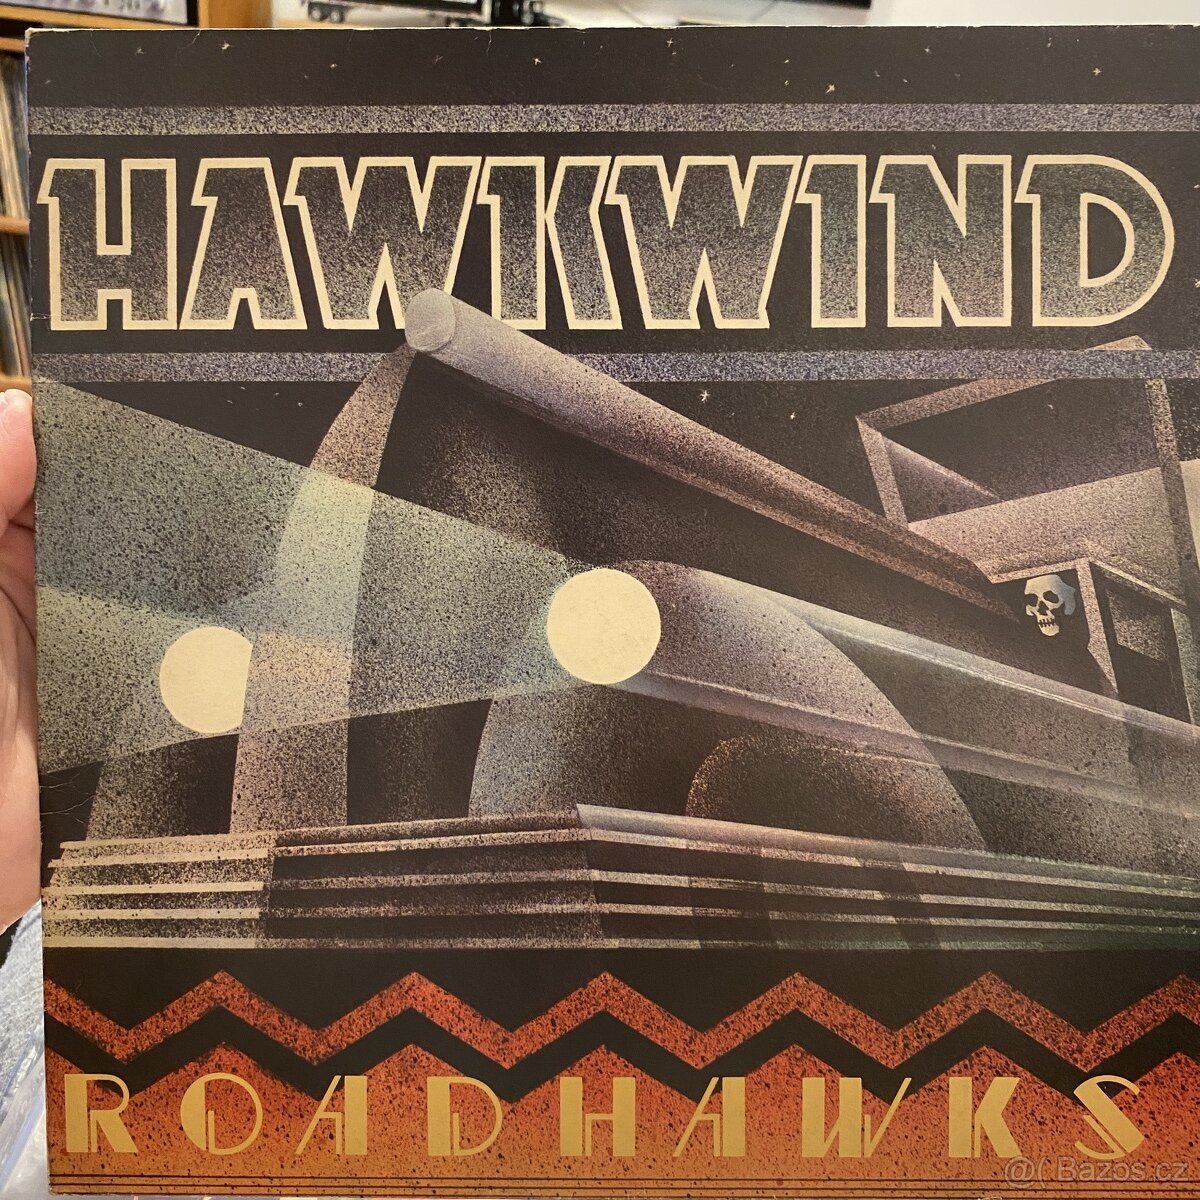 Hawkwind – Roadhawks. LP